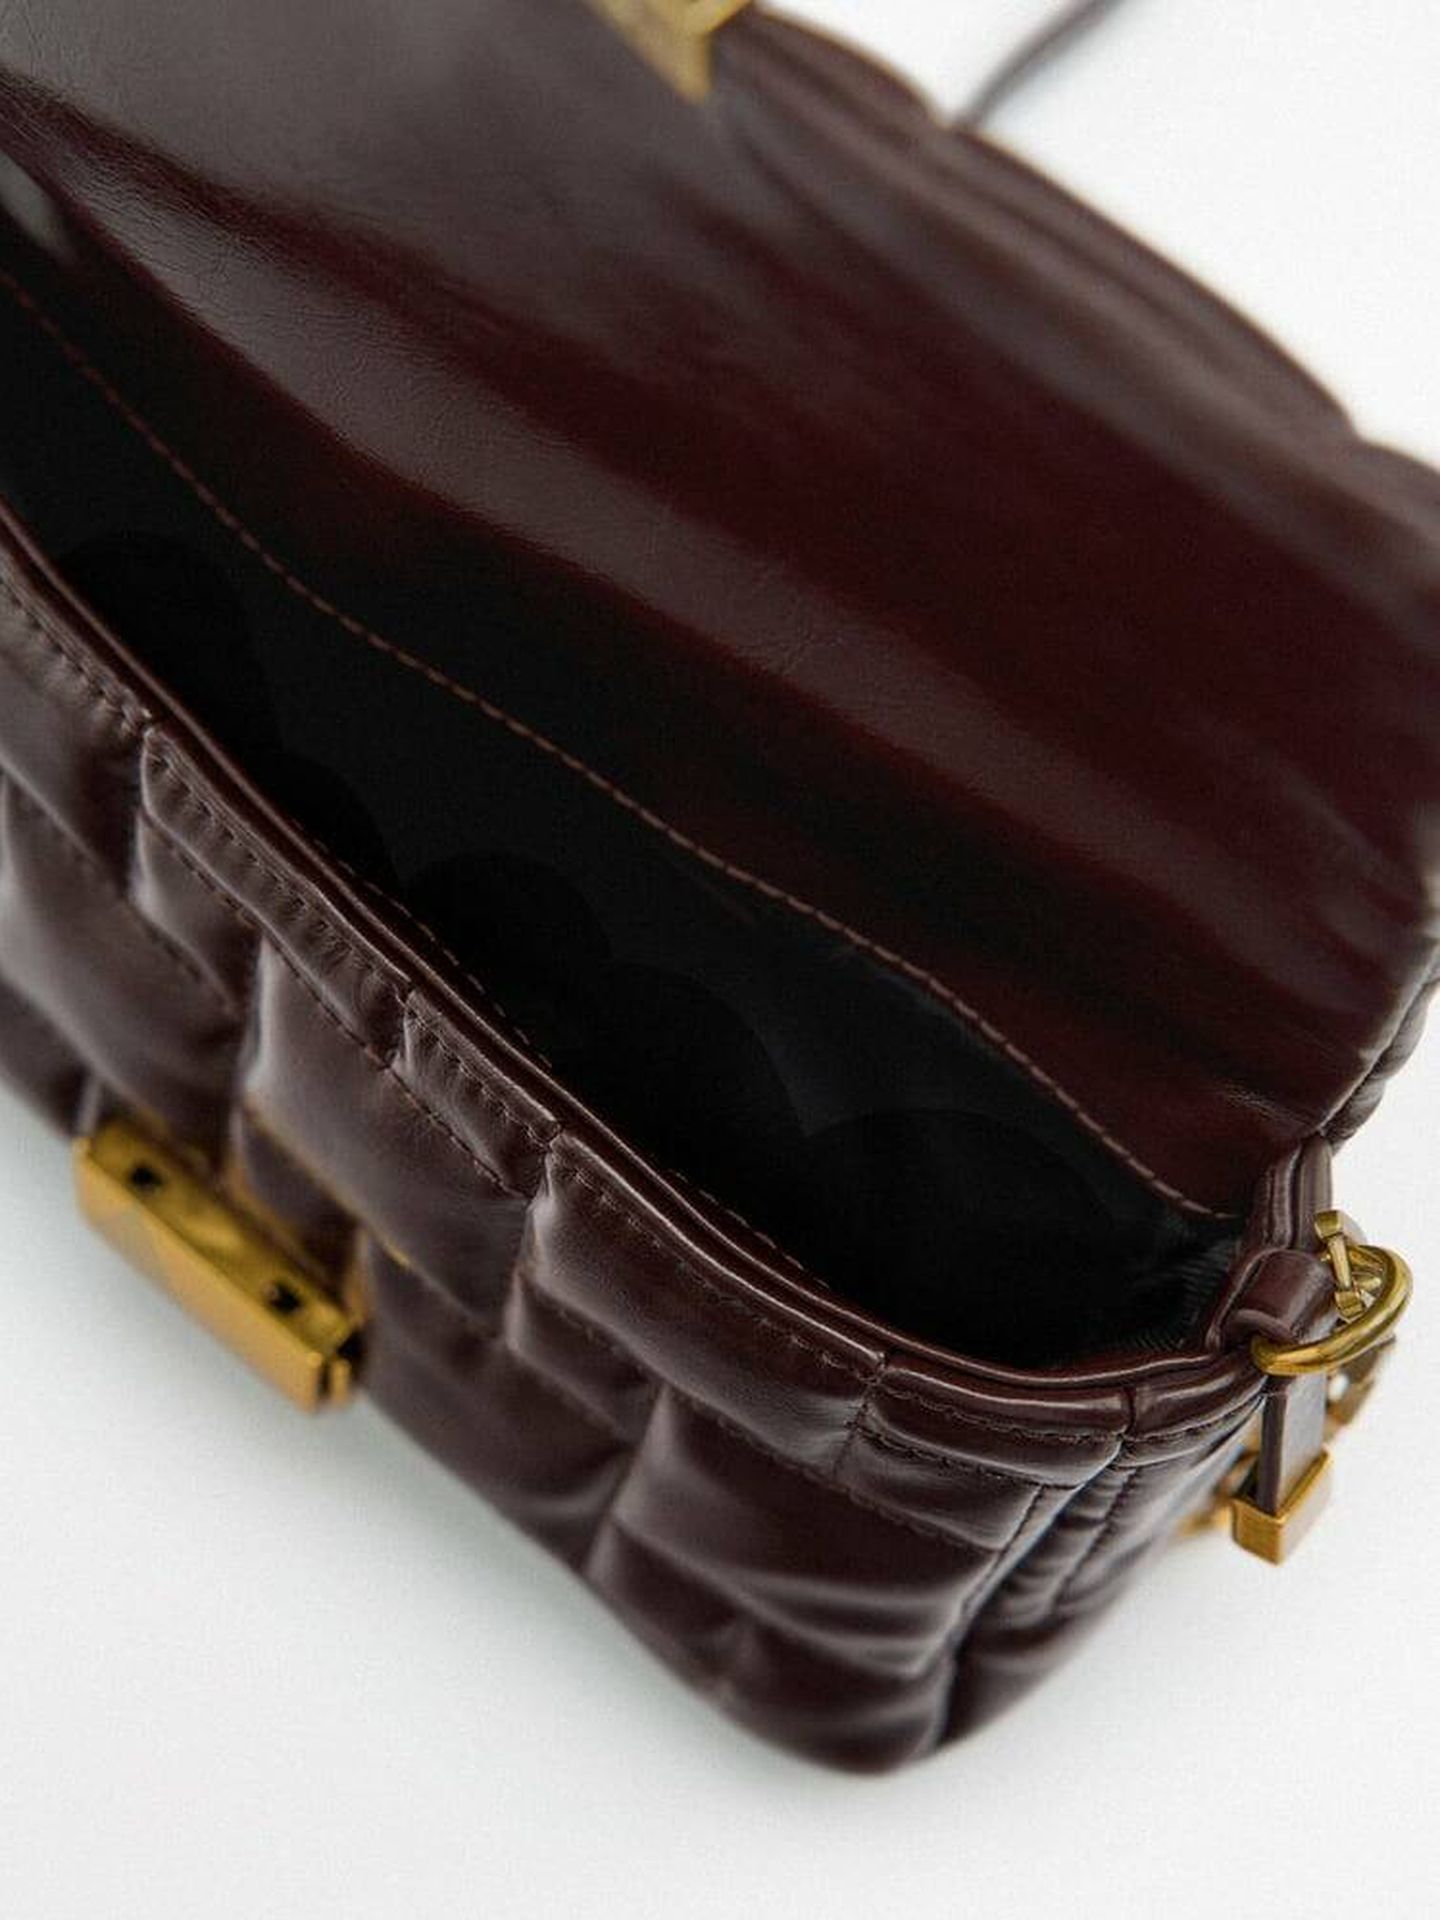 El bolso de color marrón de Zara. (Cortesía)